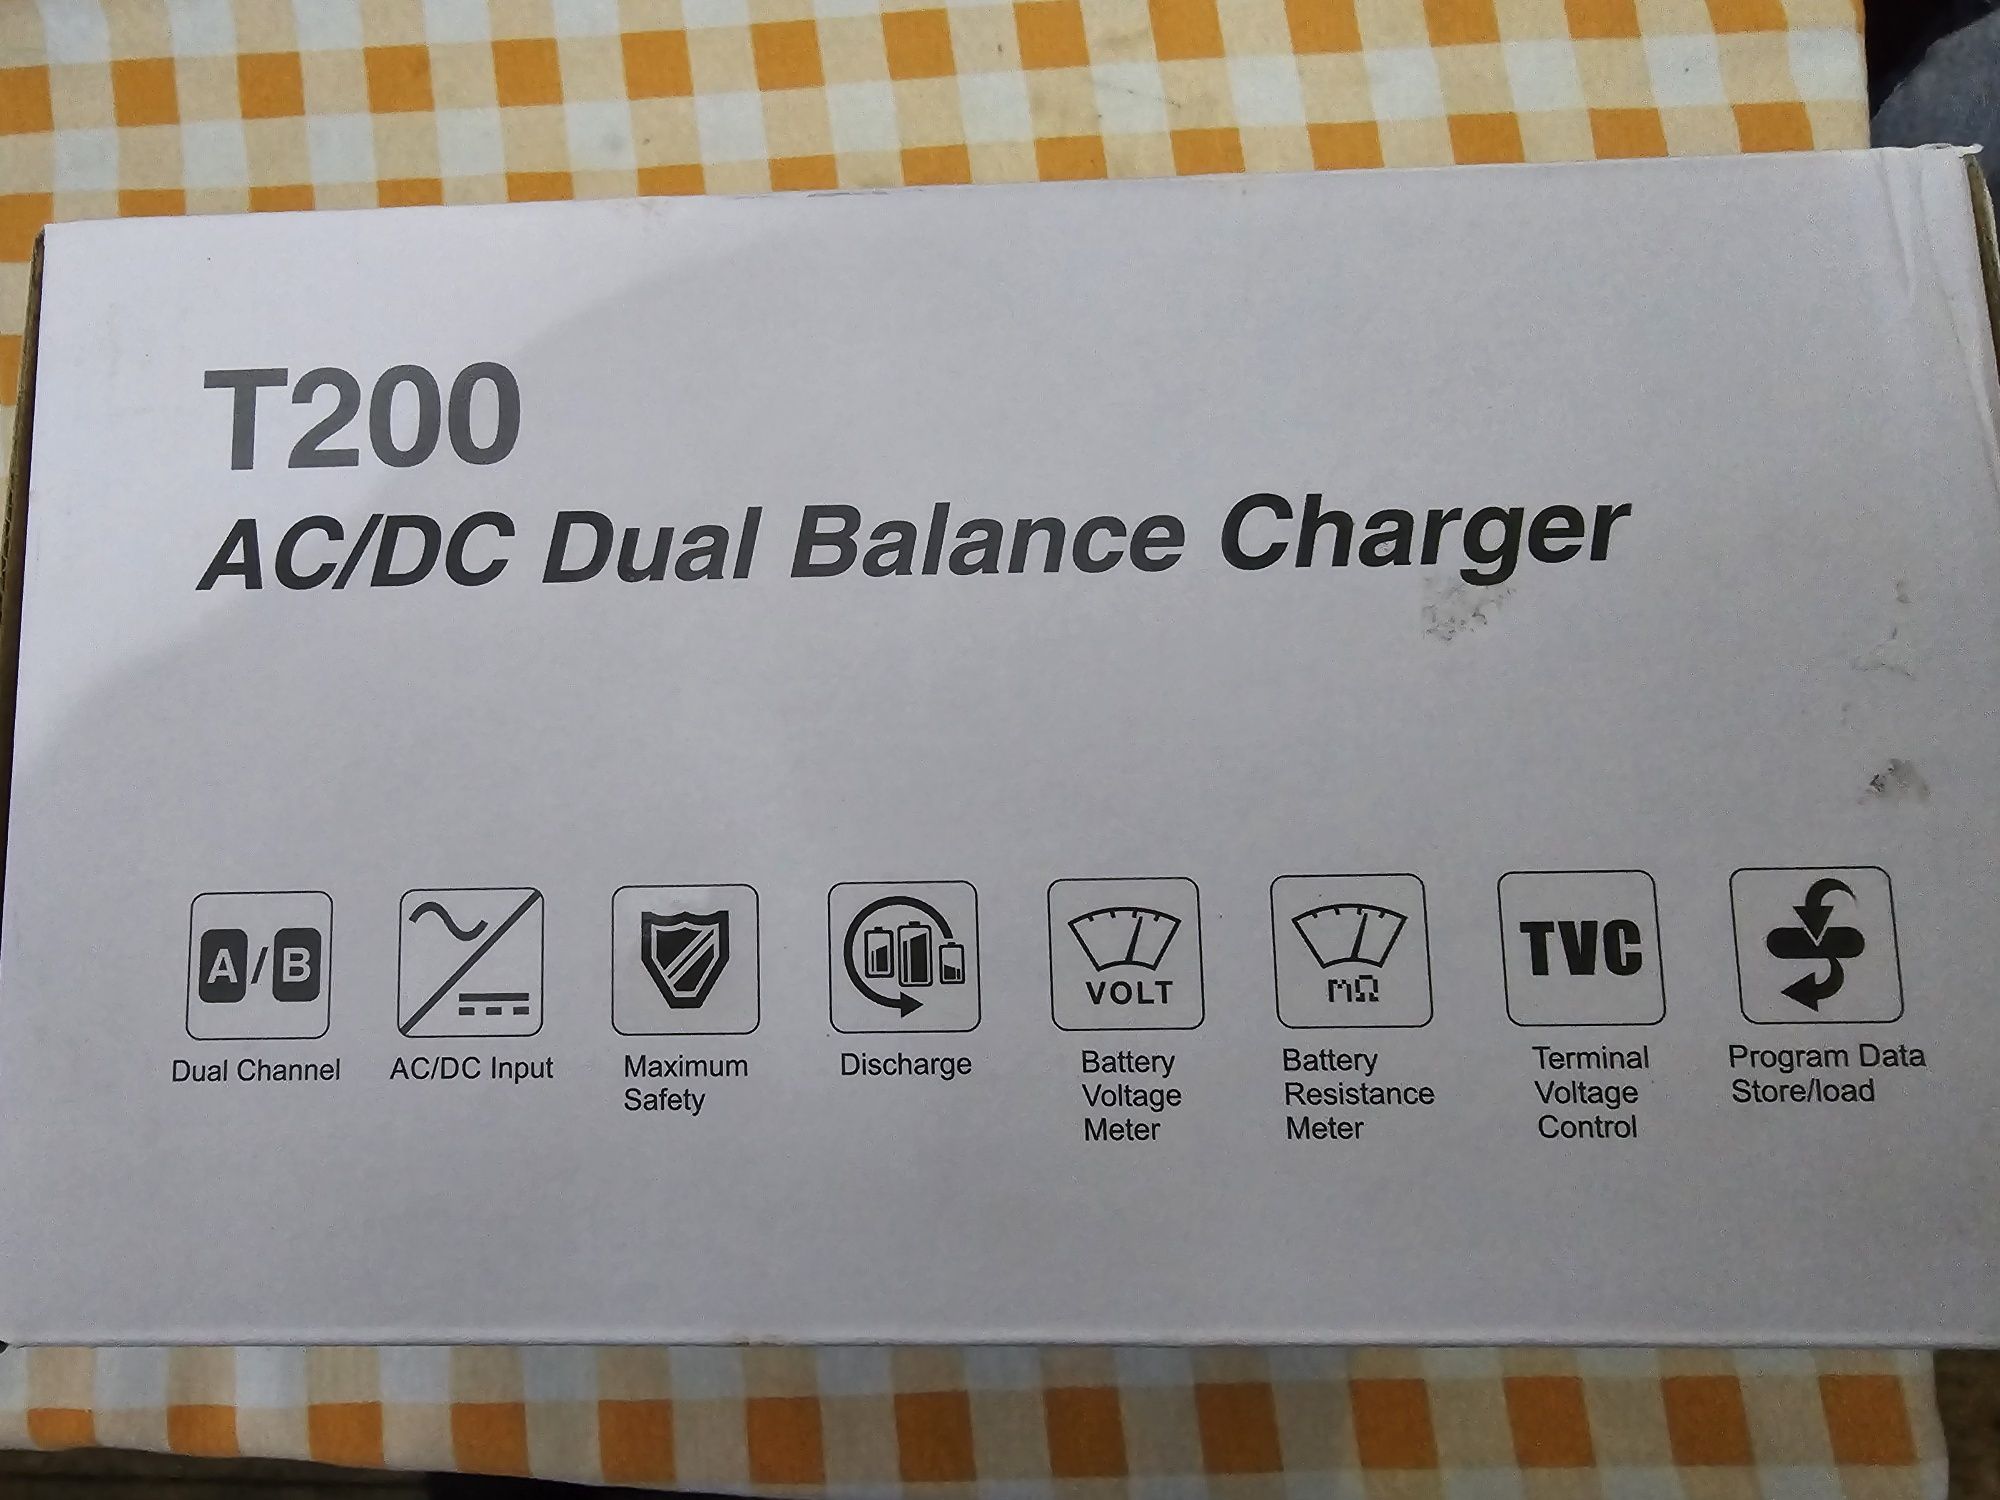 SKYRC T200 Dual Balance Charger